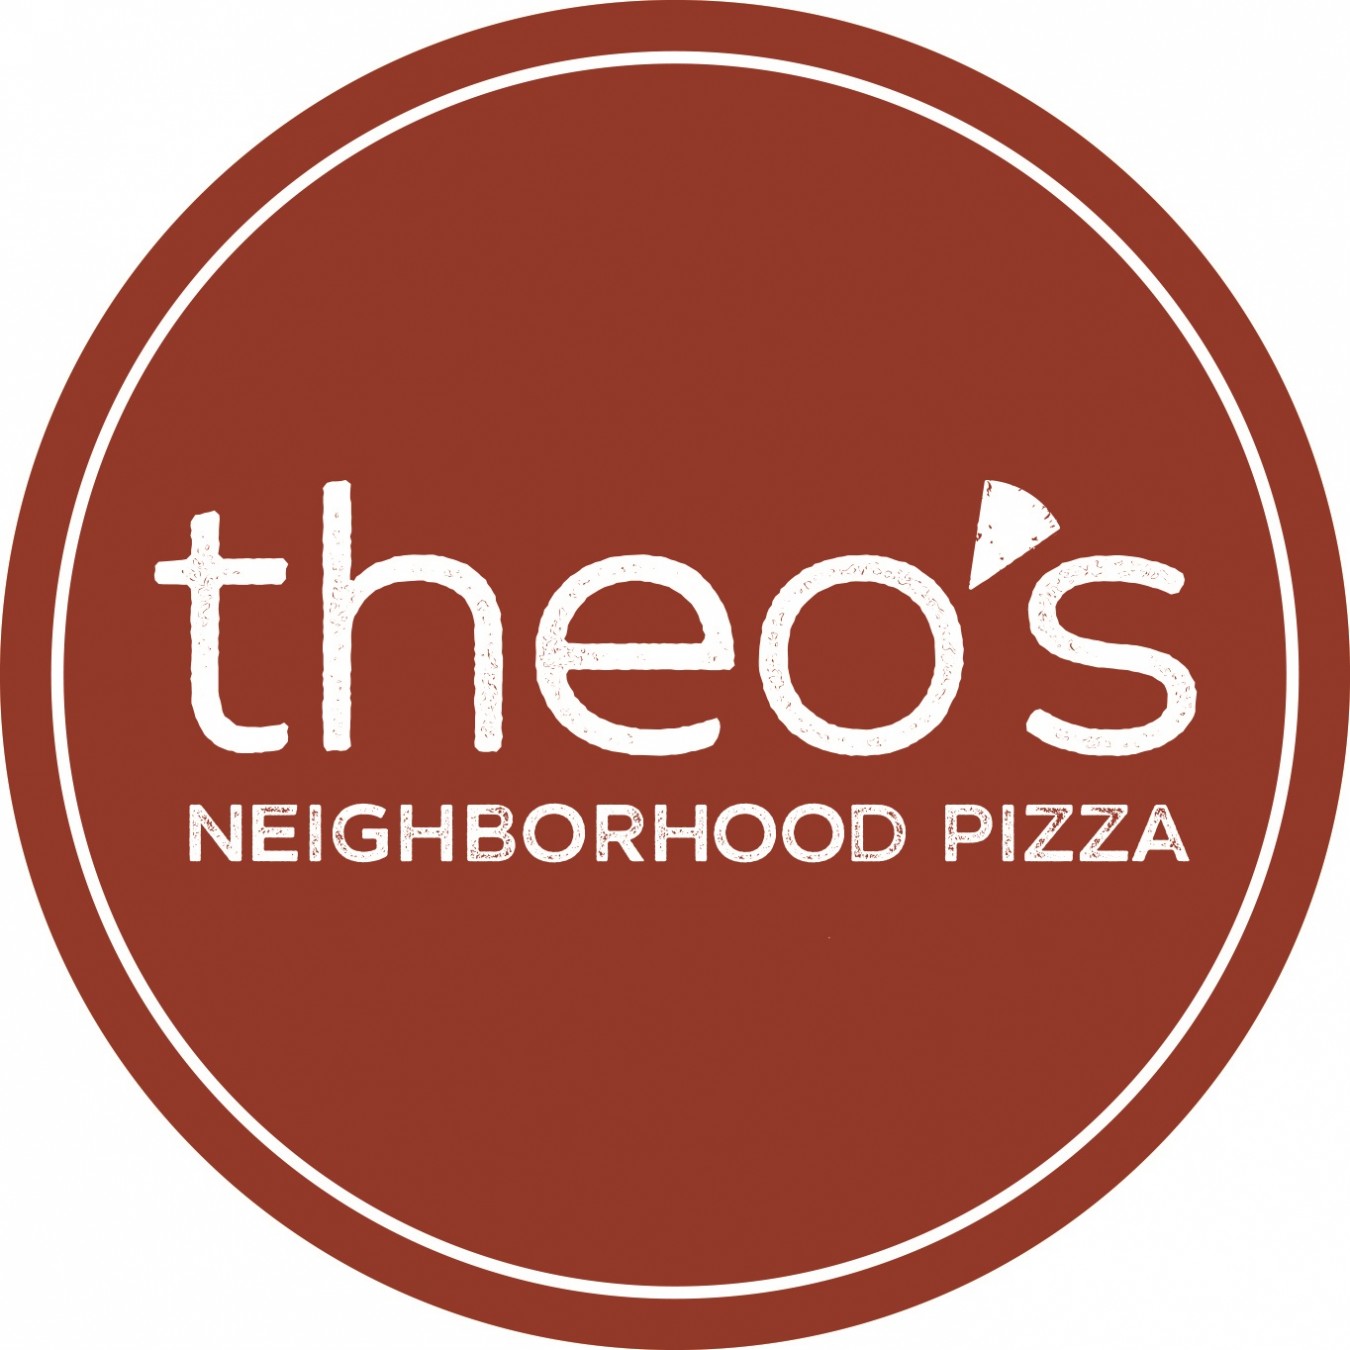 Theo's Neighborhood Pizza